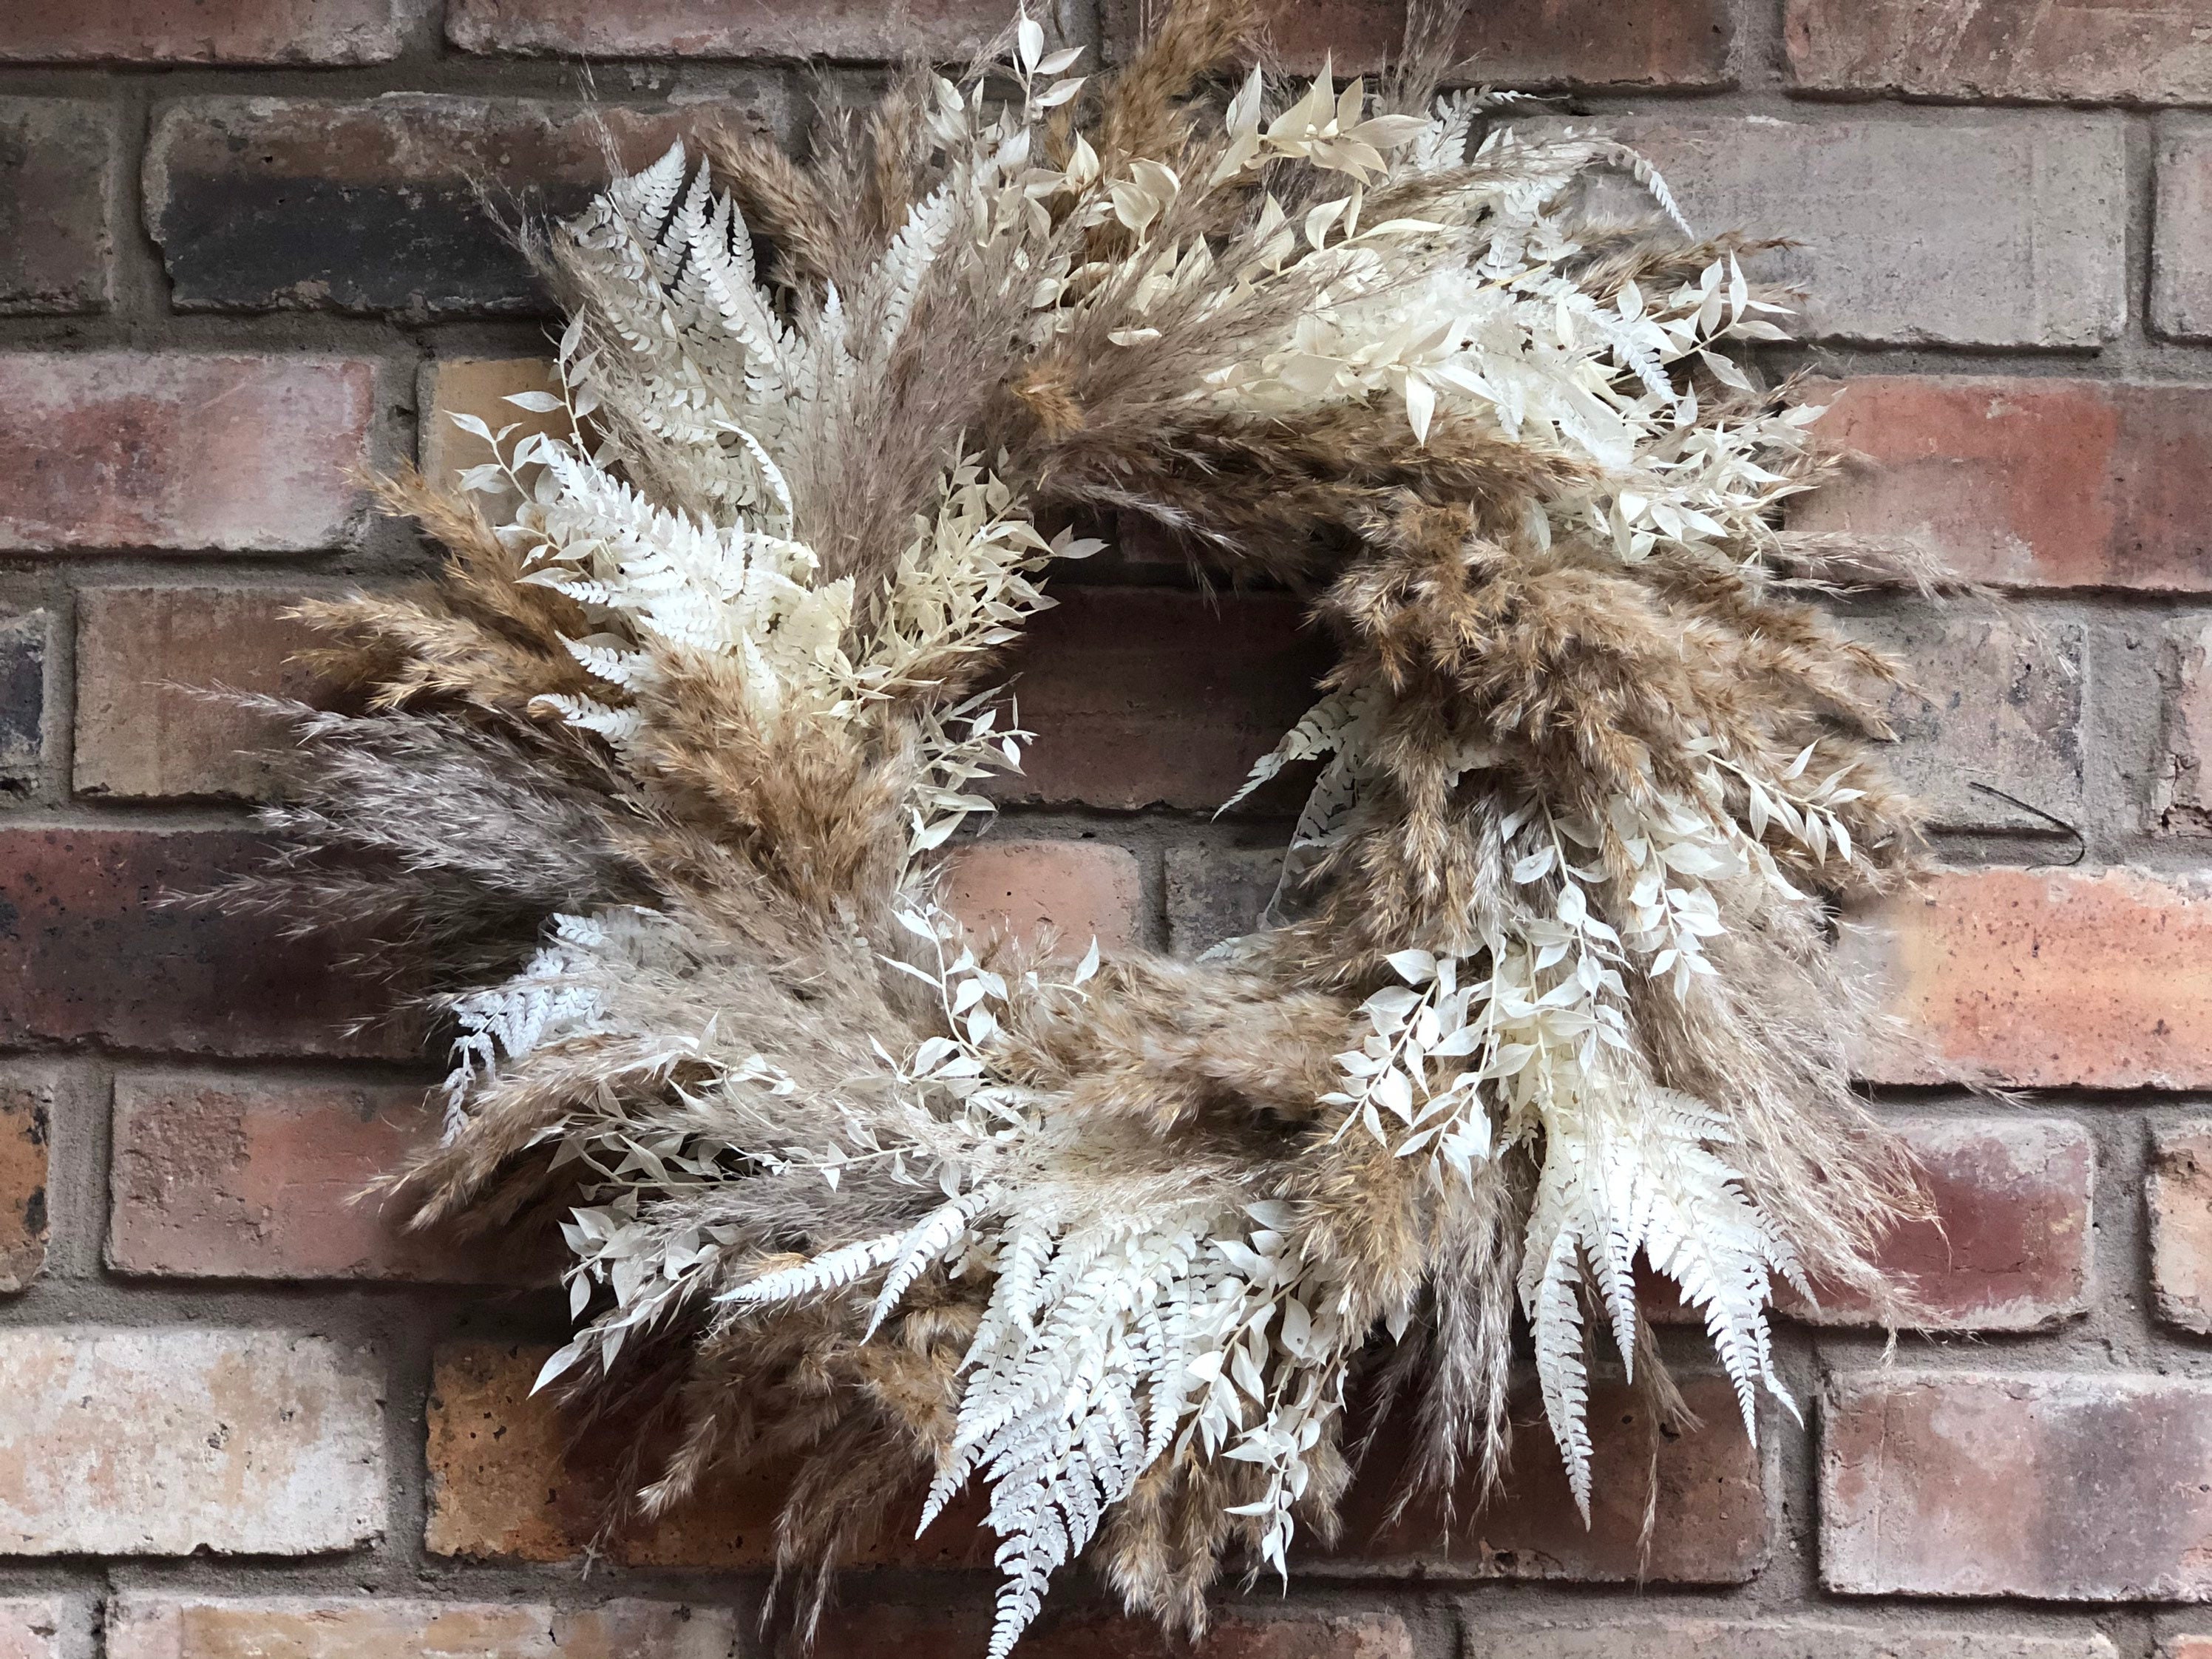 Dried White Wreath